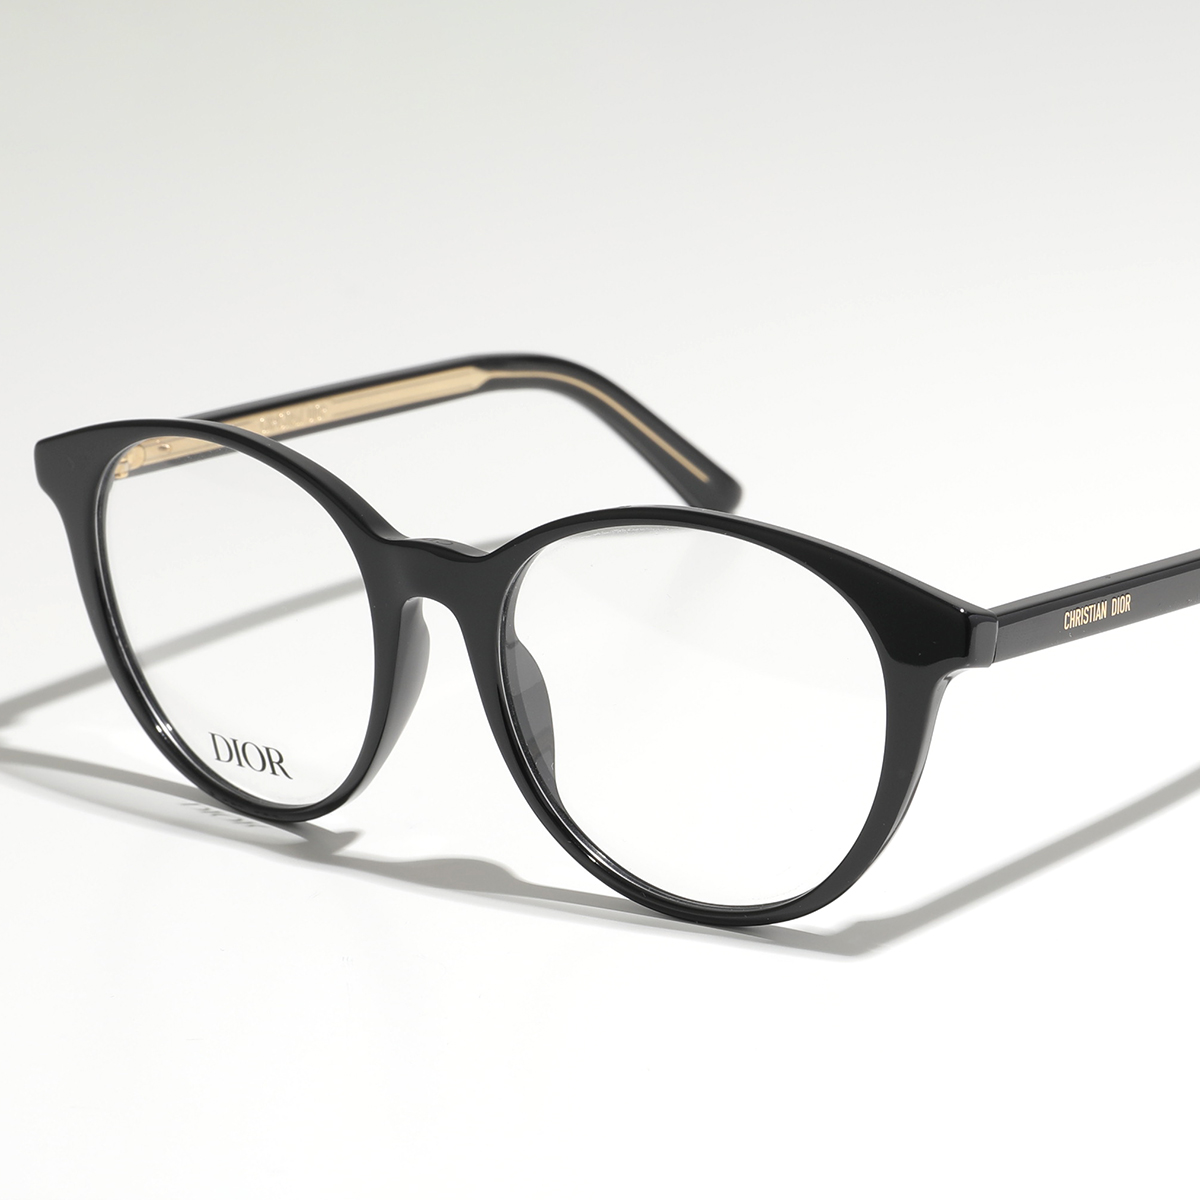 Dior ディオール メガネ CD50021I レディース ウェリントン型 めがね 眼鏡 ロゴ アイ...